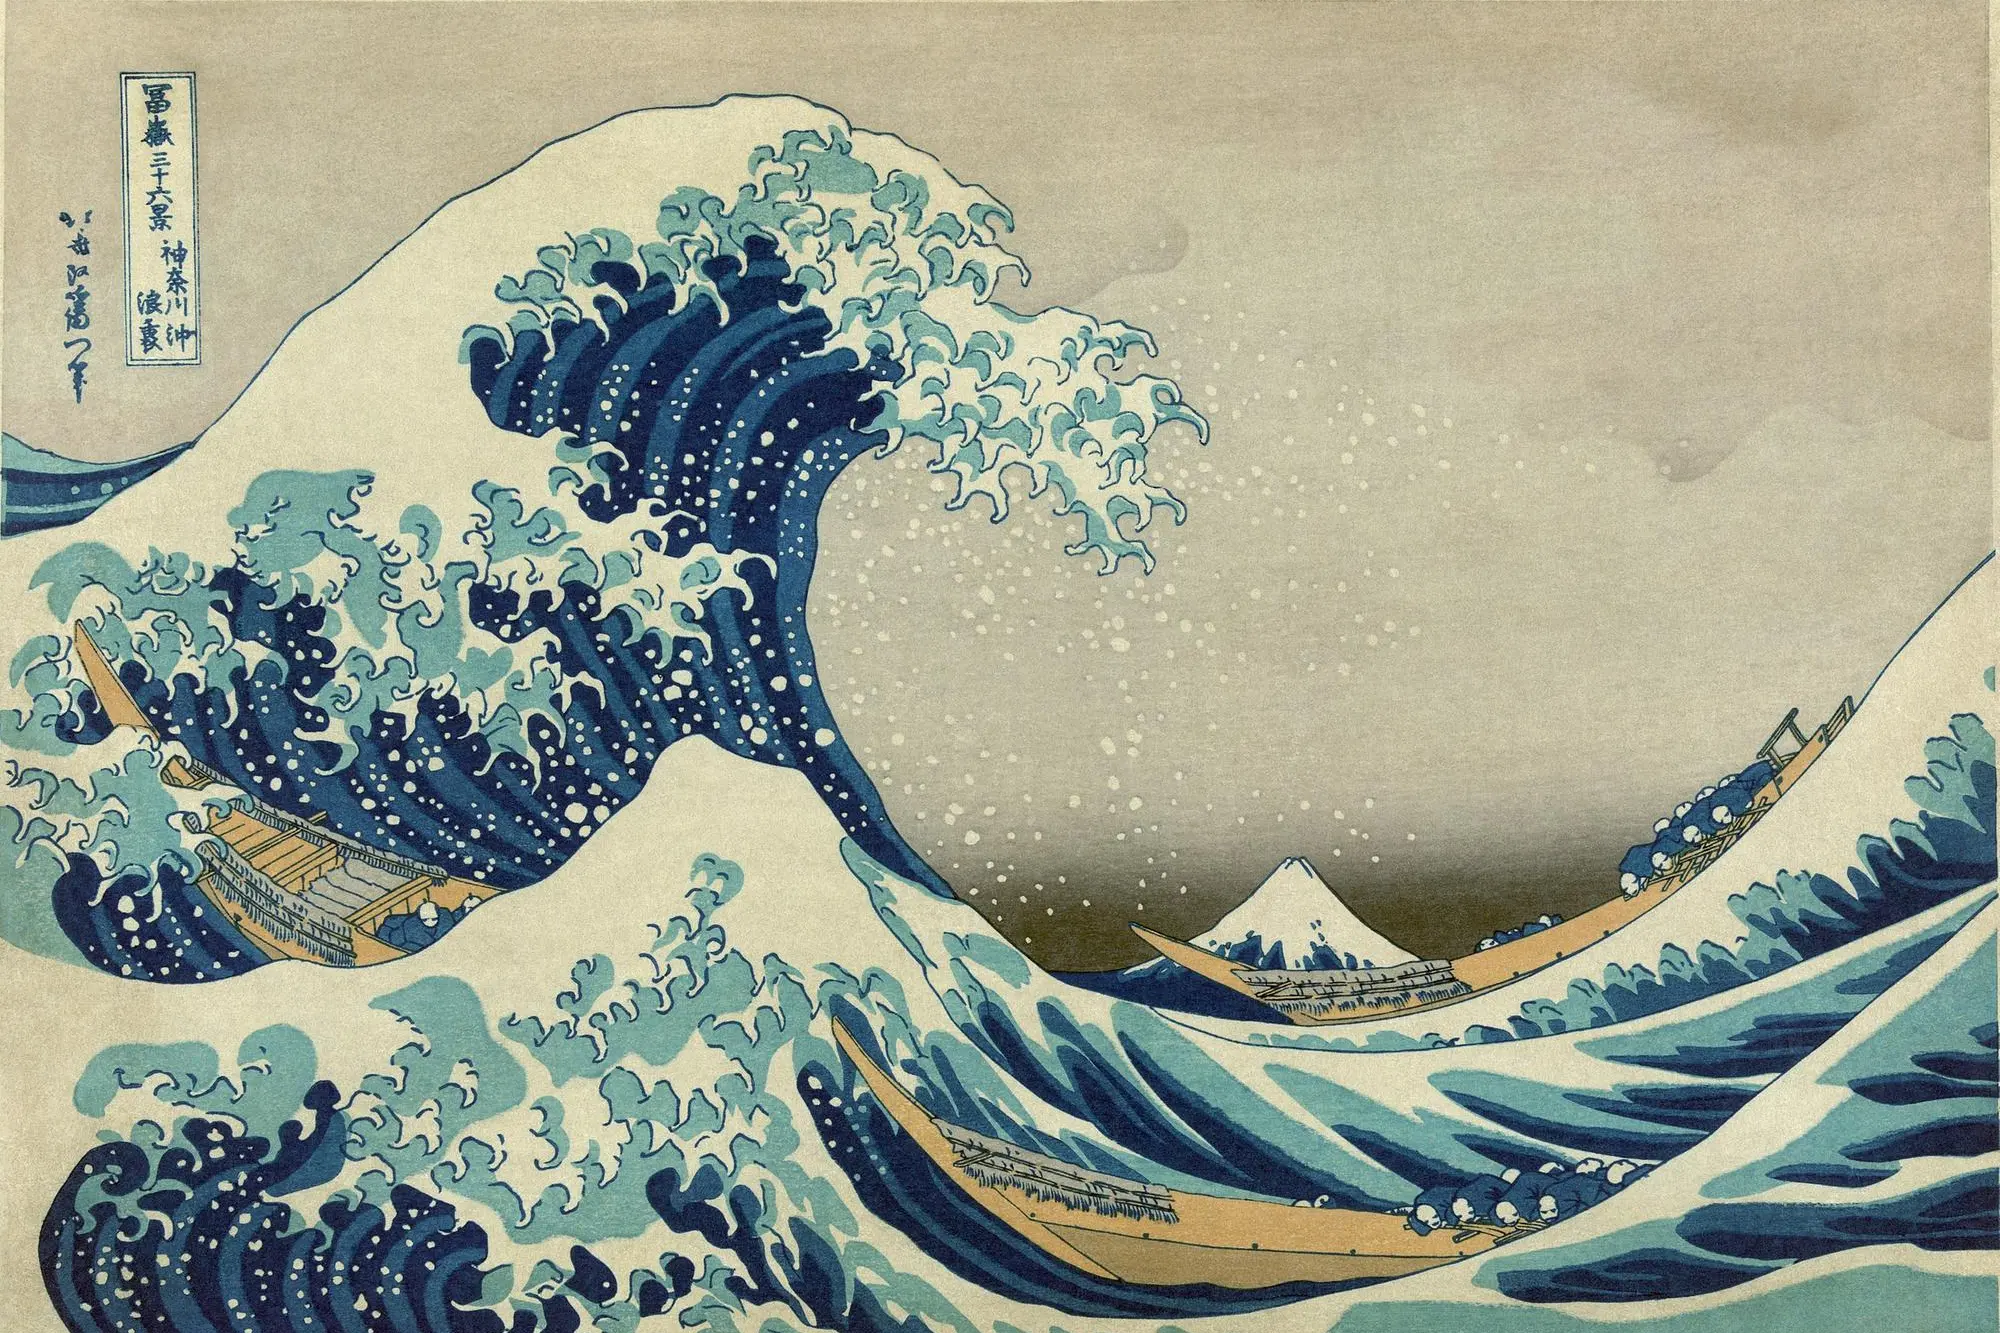 La grande onda di Kanagawa è una xilografia in stile ukiyo-e del pittore giapponese Hokusai pubblicata la prima volta tra il 1830 e il 1831